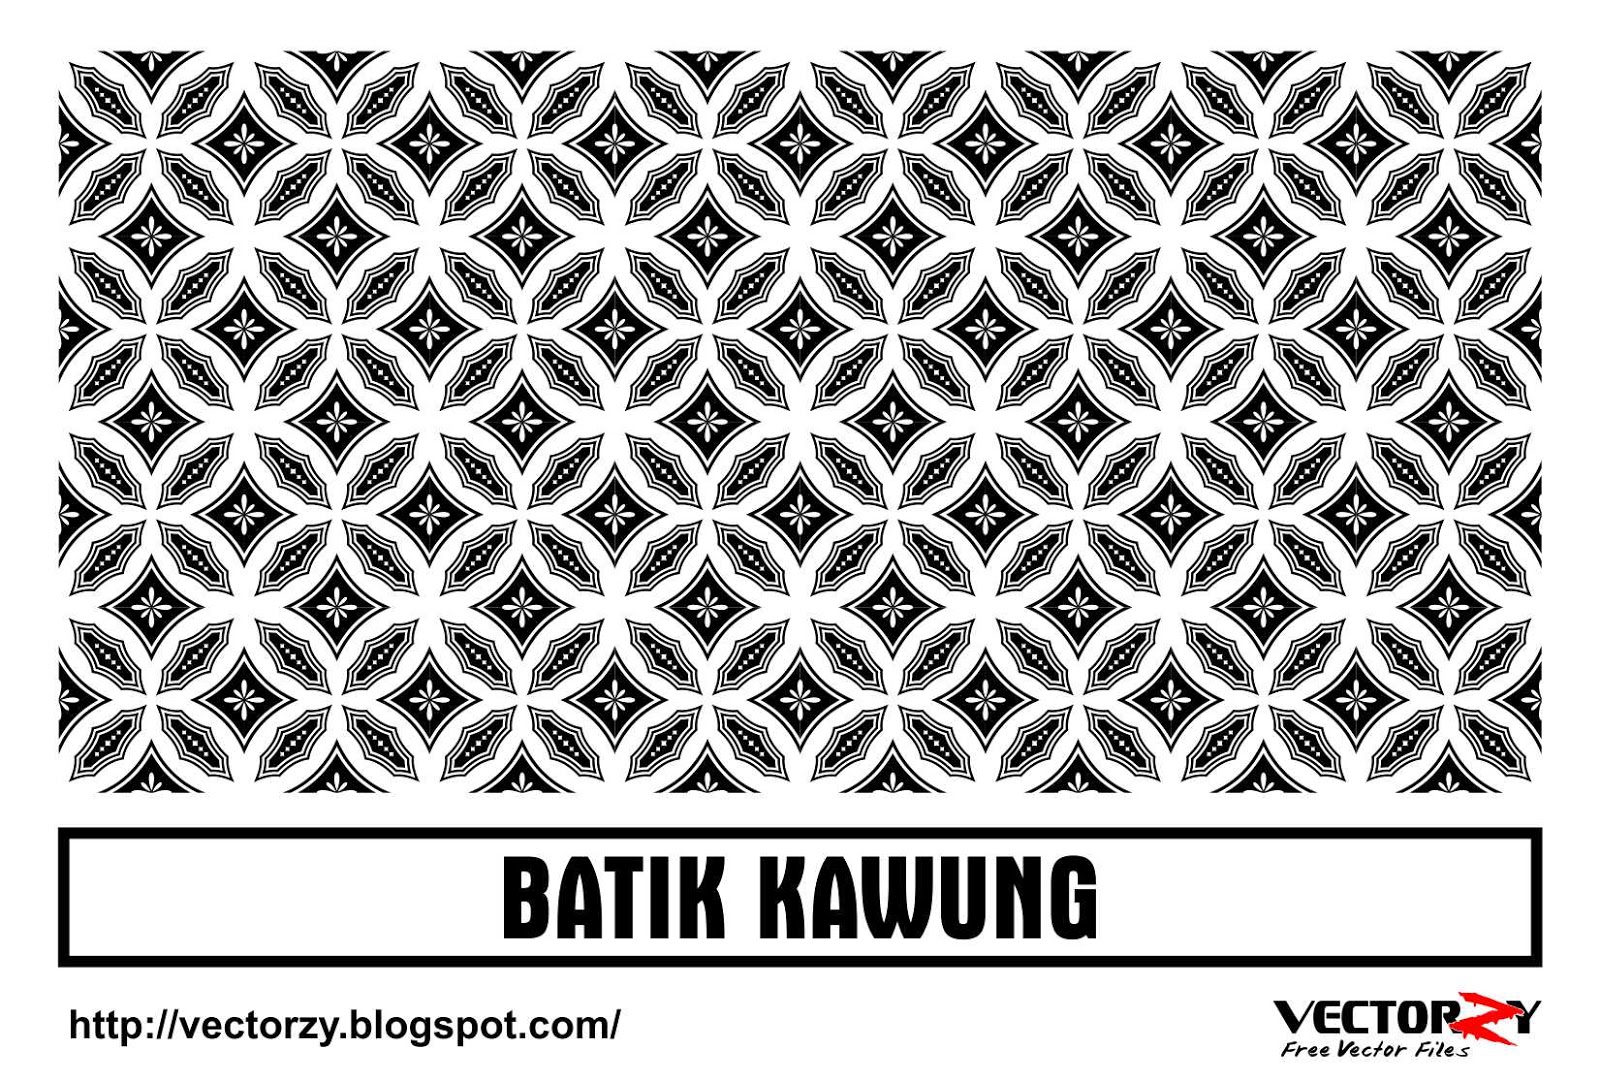 Download Batik  Kawung Vector CDR CorelDraw  Vectorzy 